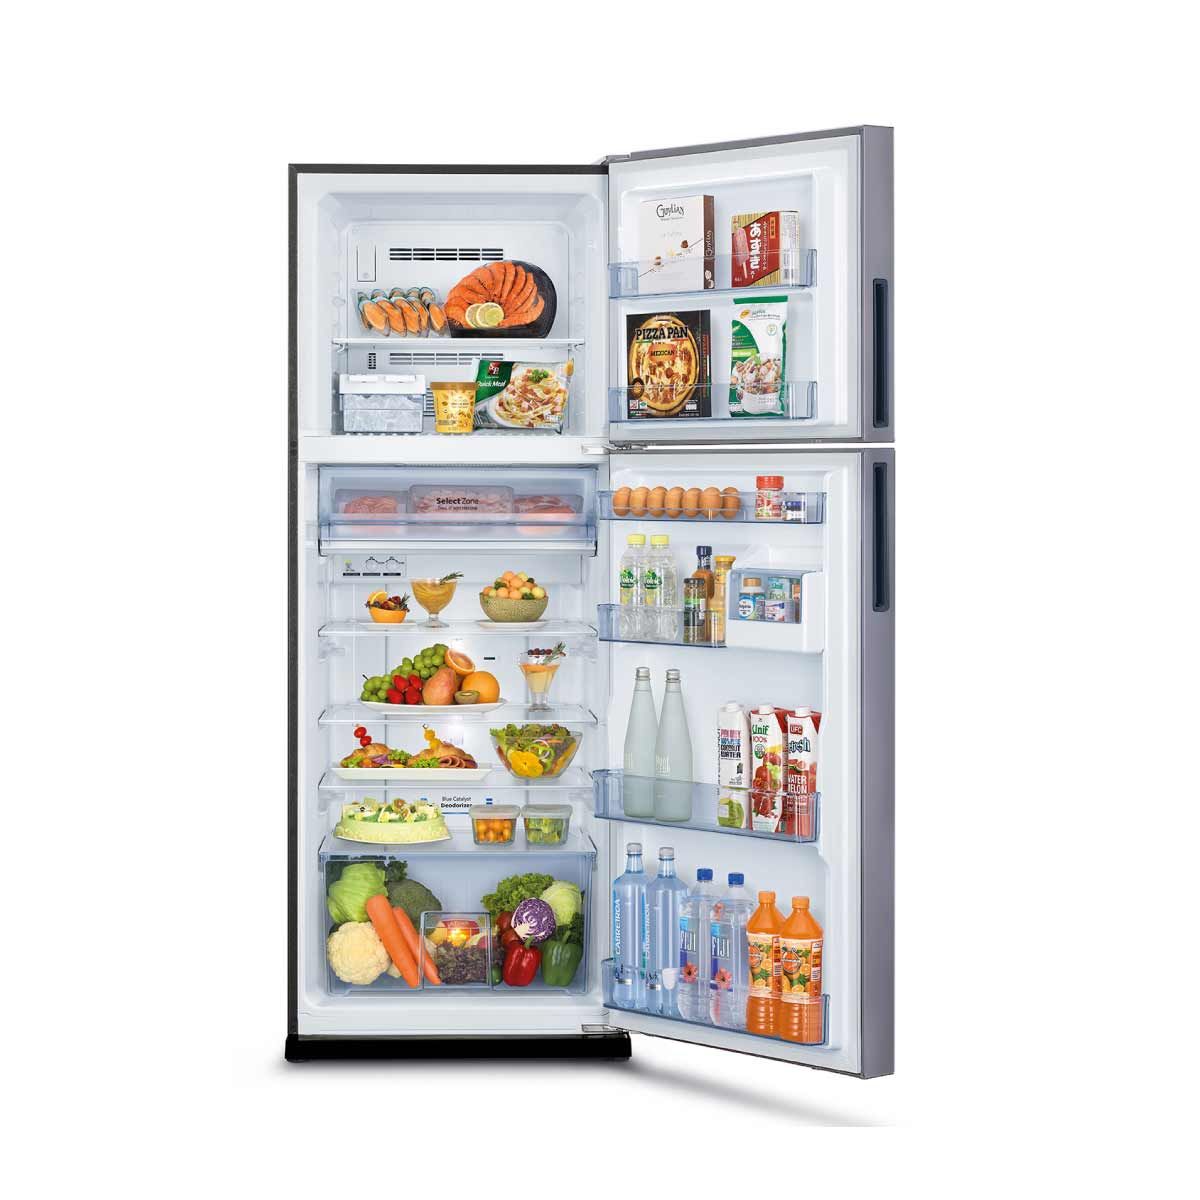 MITSUBISHI ELECTRIC ตู้เย็น 2 ประตู 14.6 คิว INVERTER  ซิลกี้ซิลเวอร์ รุ่น MR-FS45ES